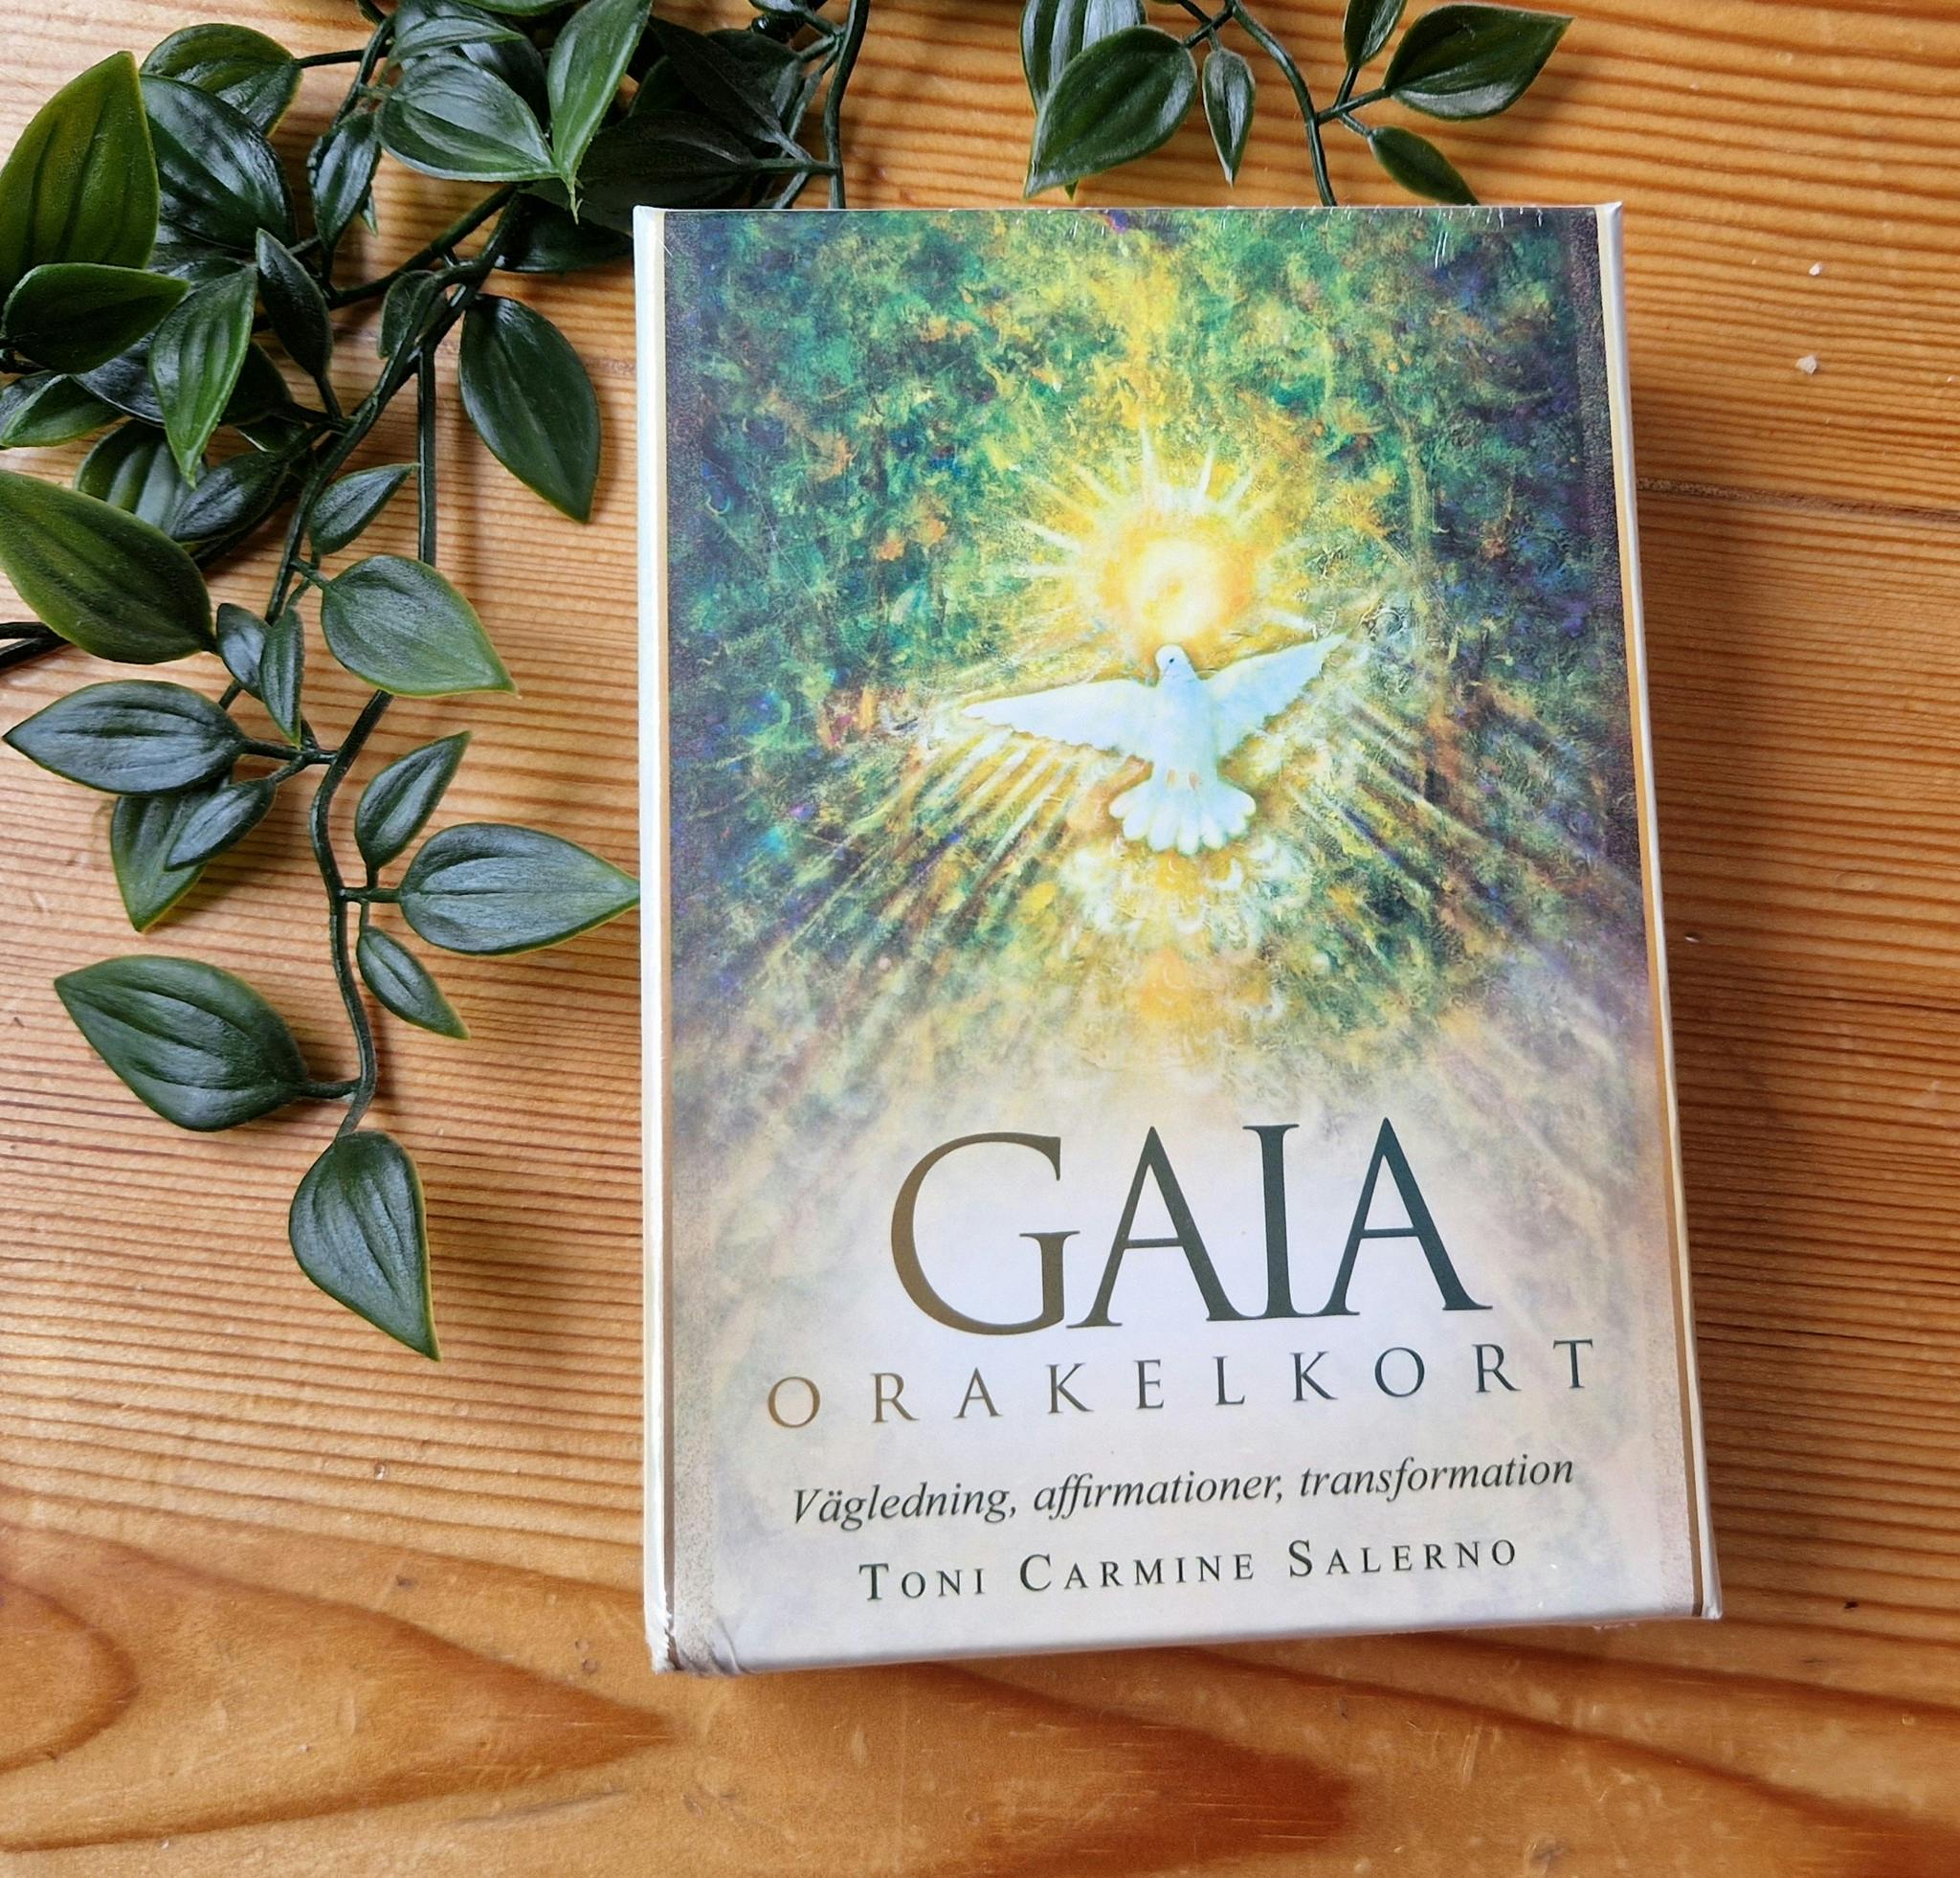 Gaia orakelkort (på Svenska)